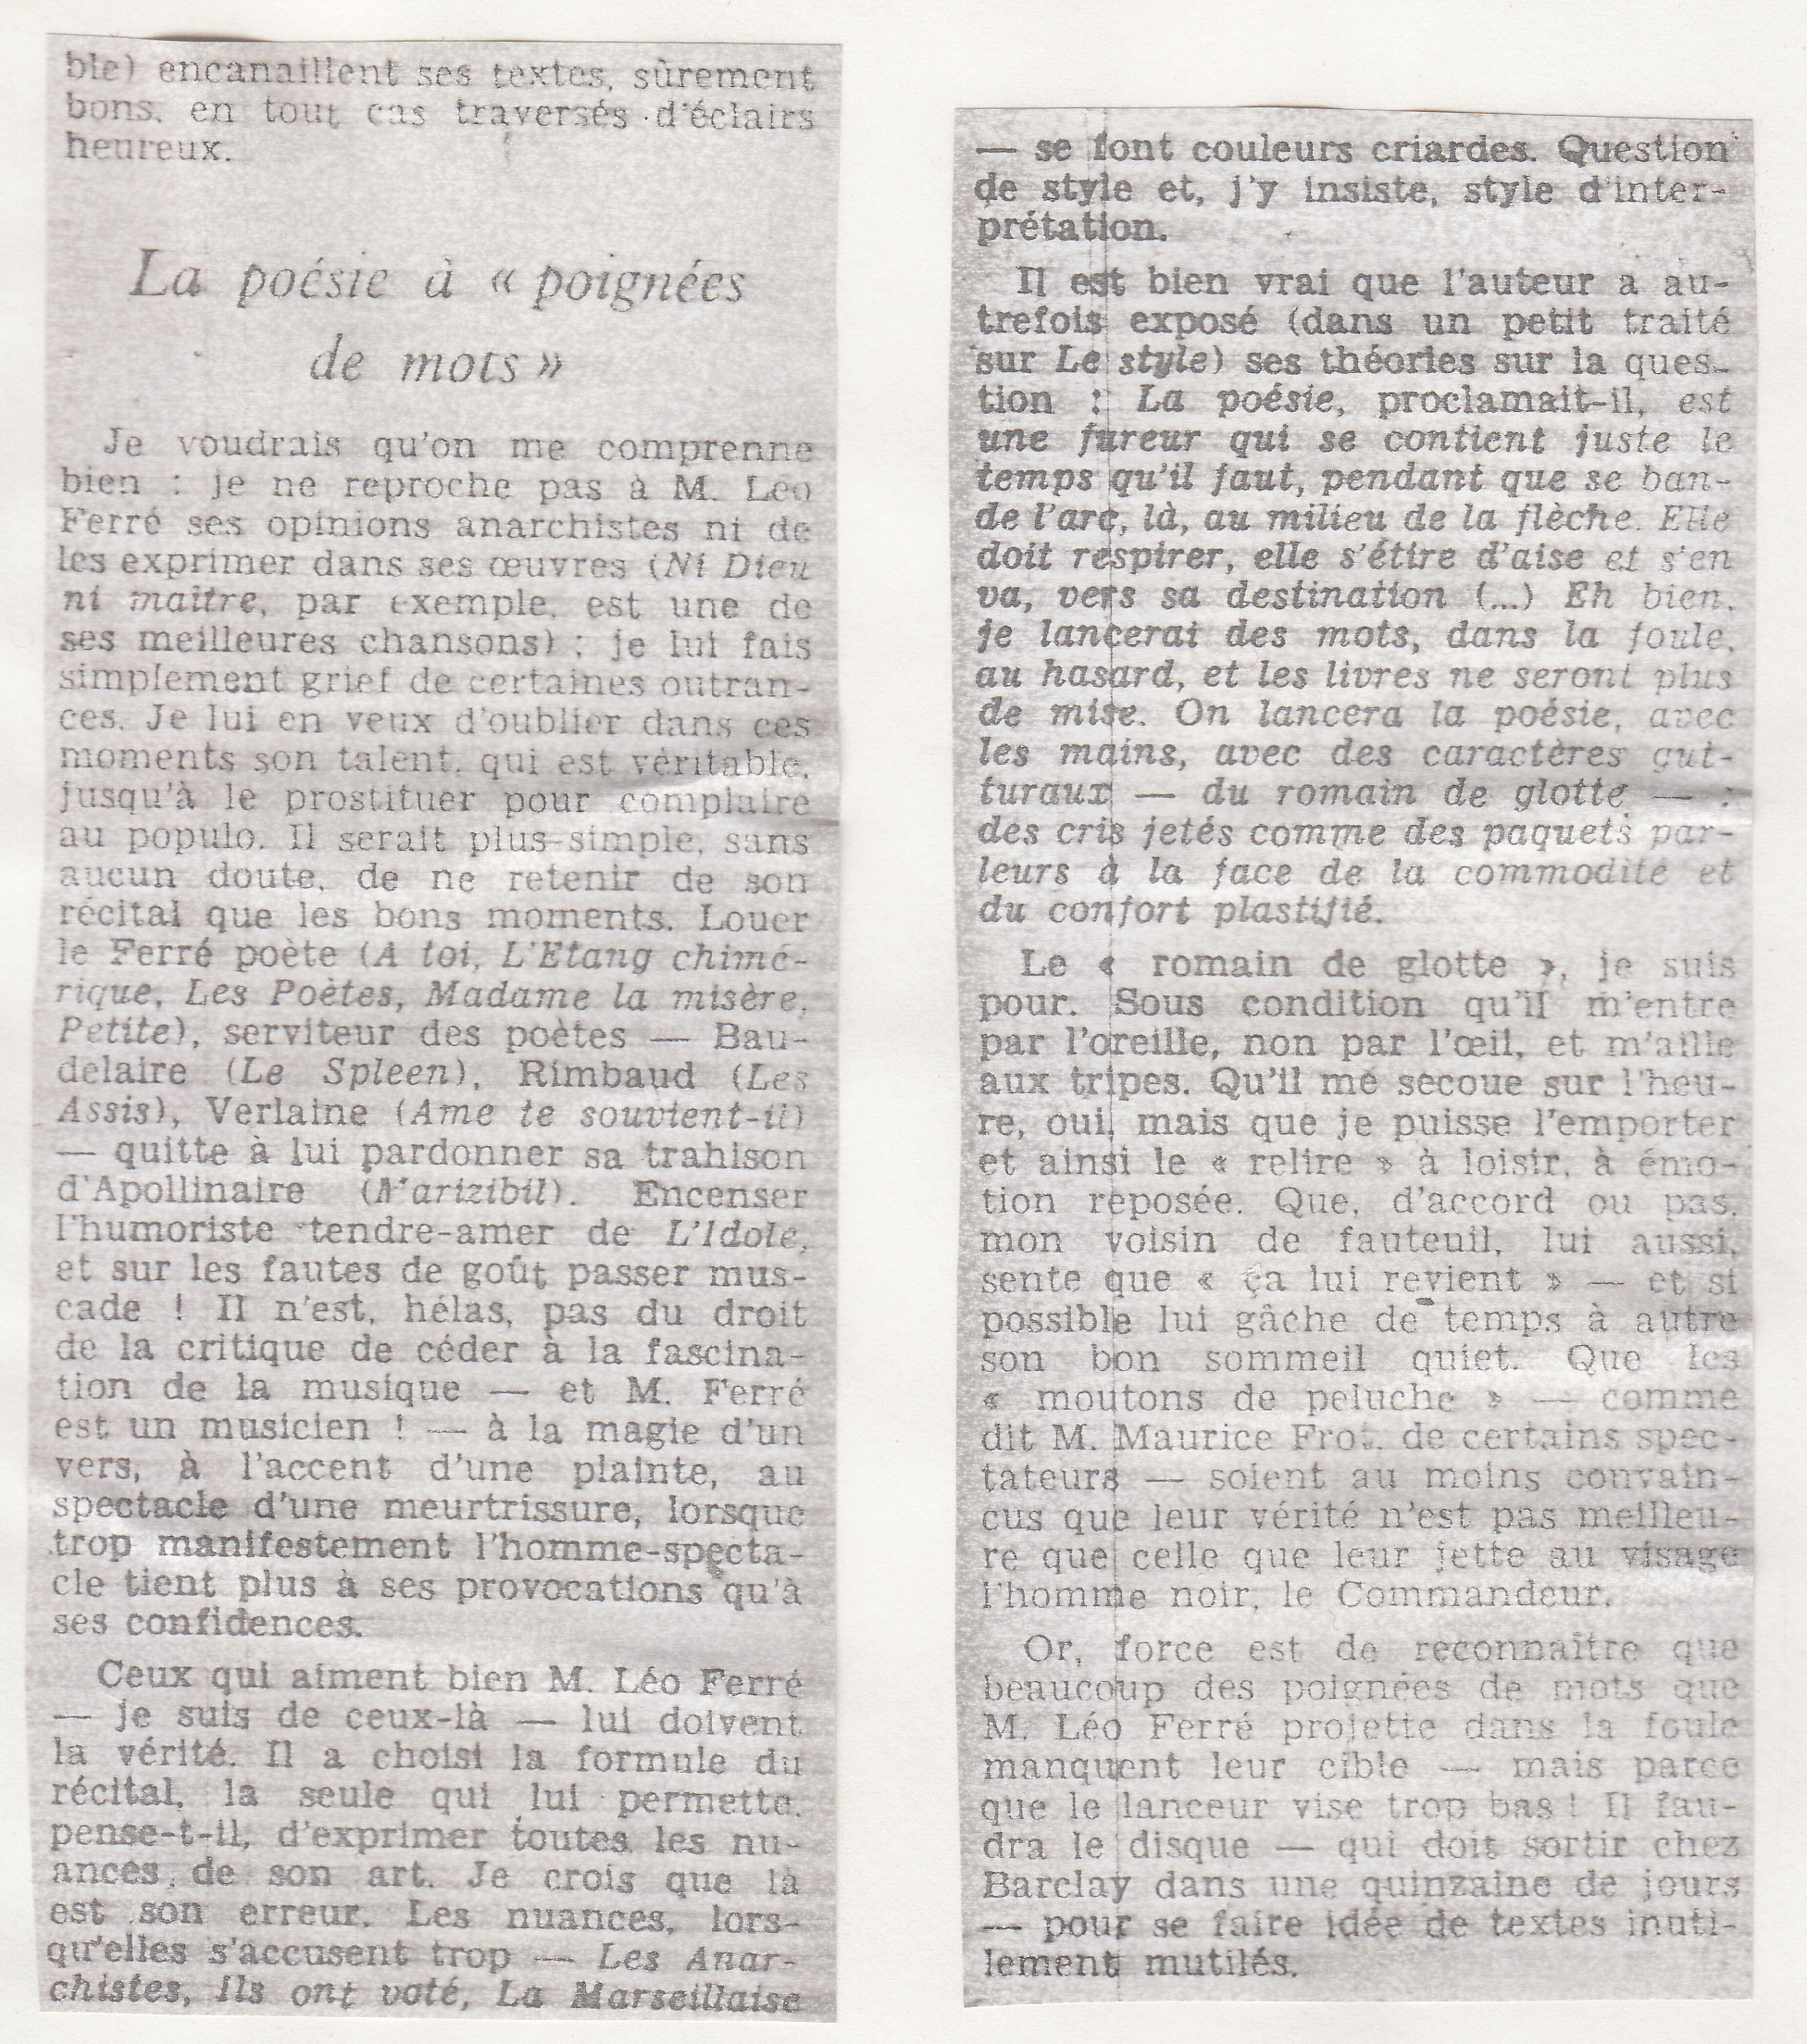 Léo Ferré - Les Lettres françaises du 15/01/1969